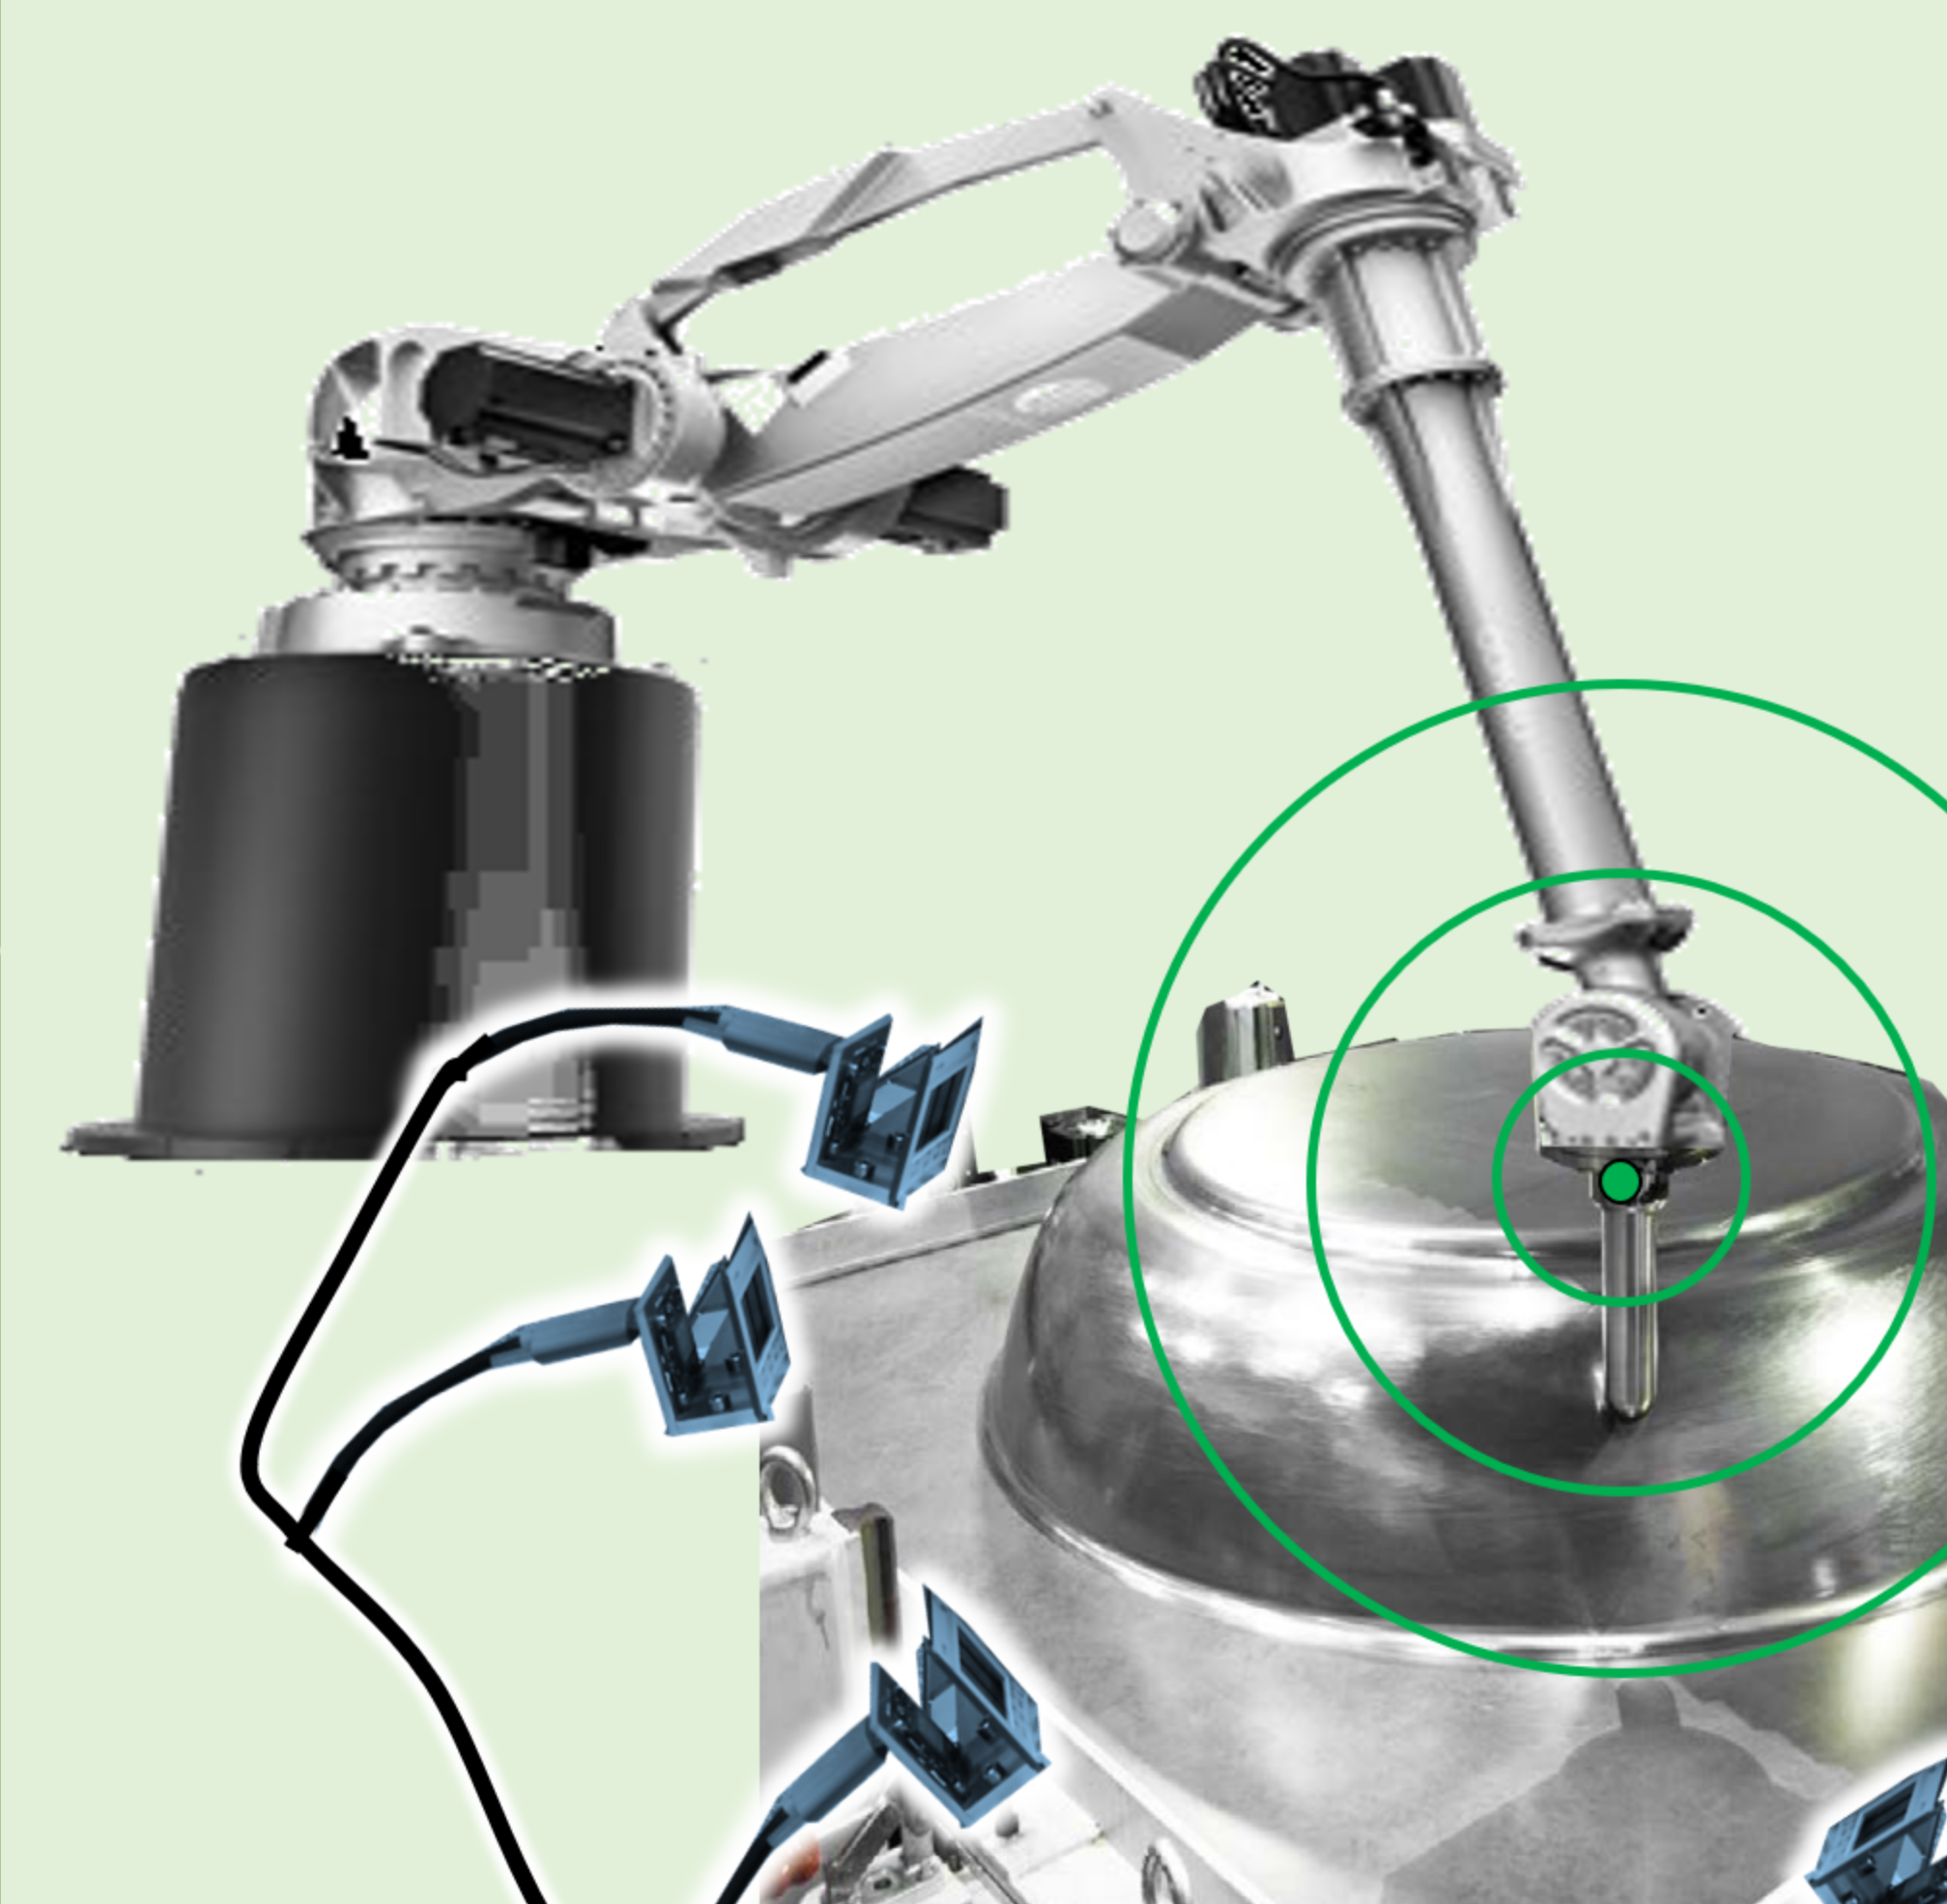 Echtzeitfähige Erfassung der Werkzeug-Lage beim roboterbasierten Umformen mit einem optischen Multi-Sensor-System